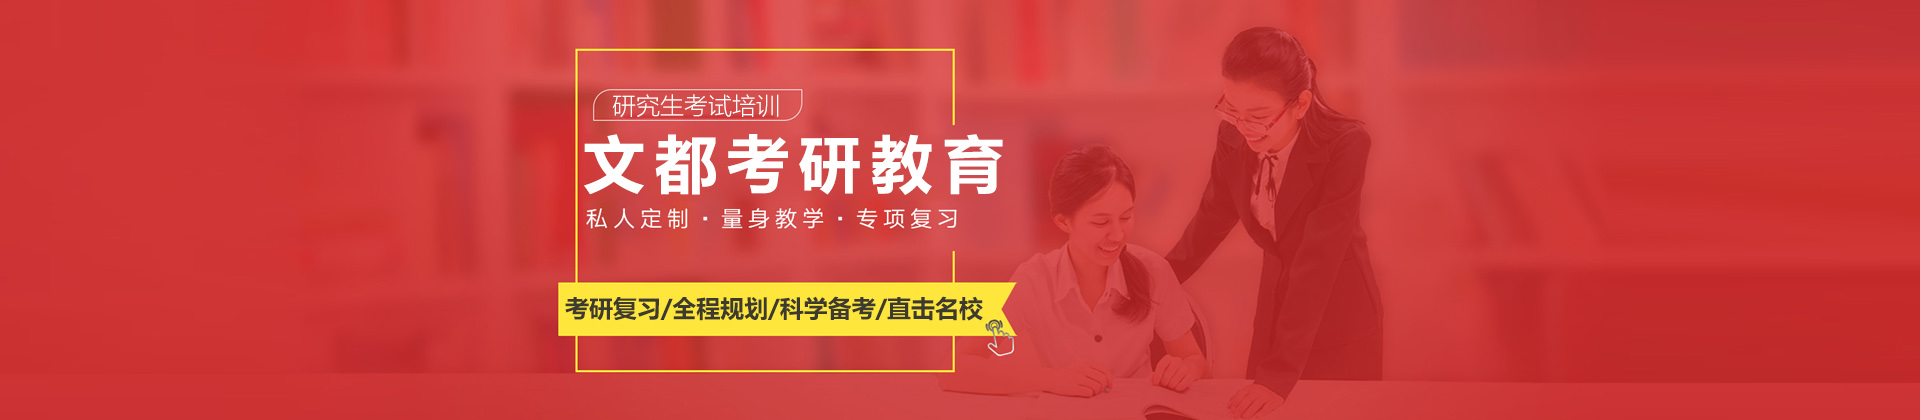 北京文都考研为大学生提供升学、就业和职场提升的专业教育机构。